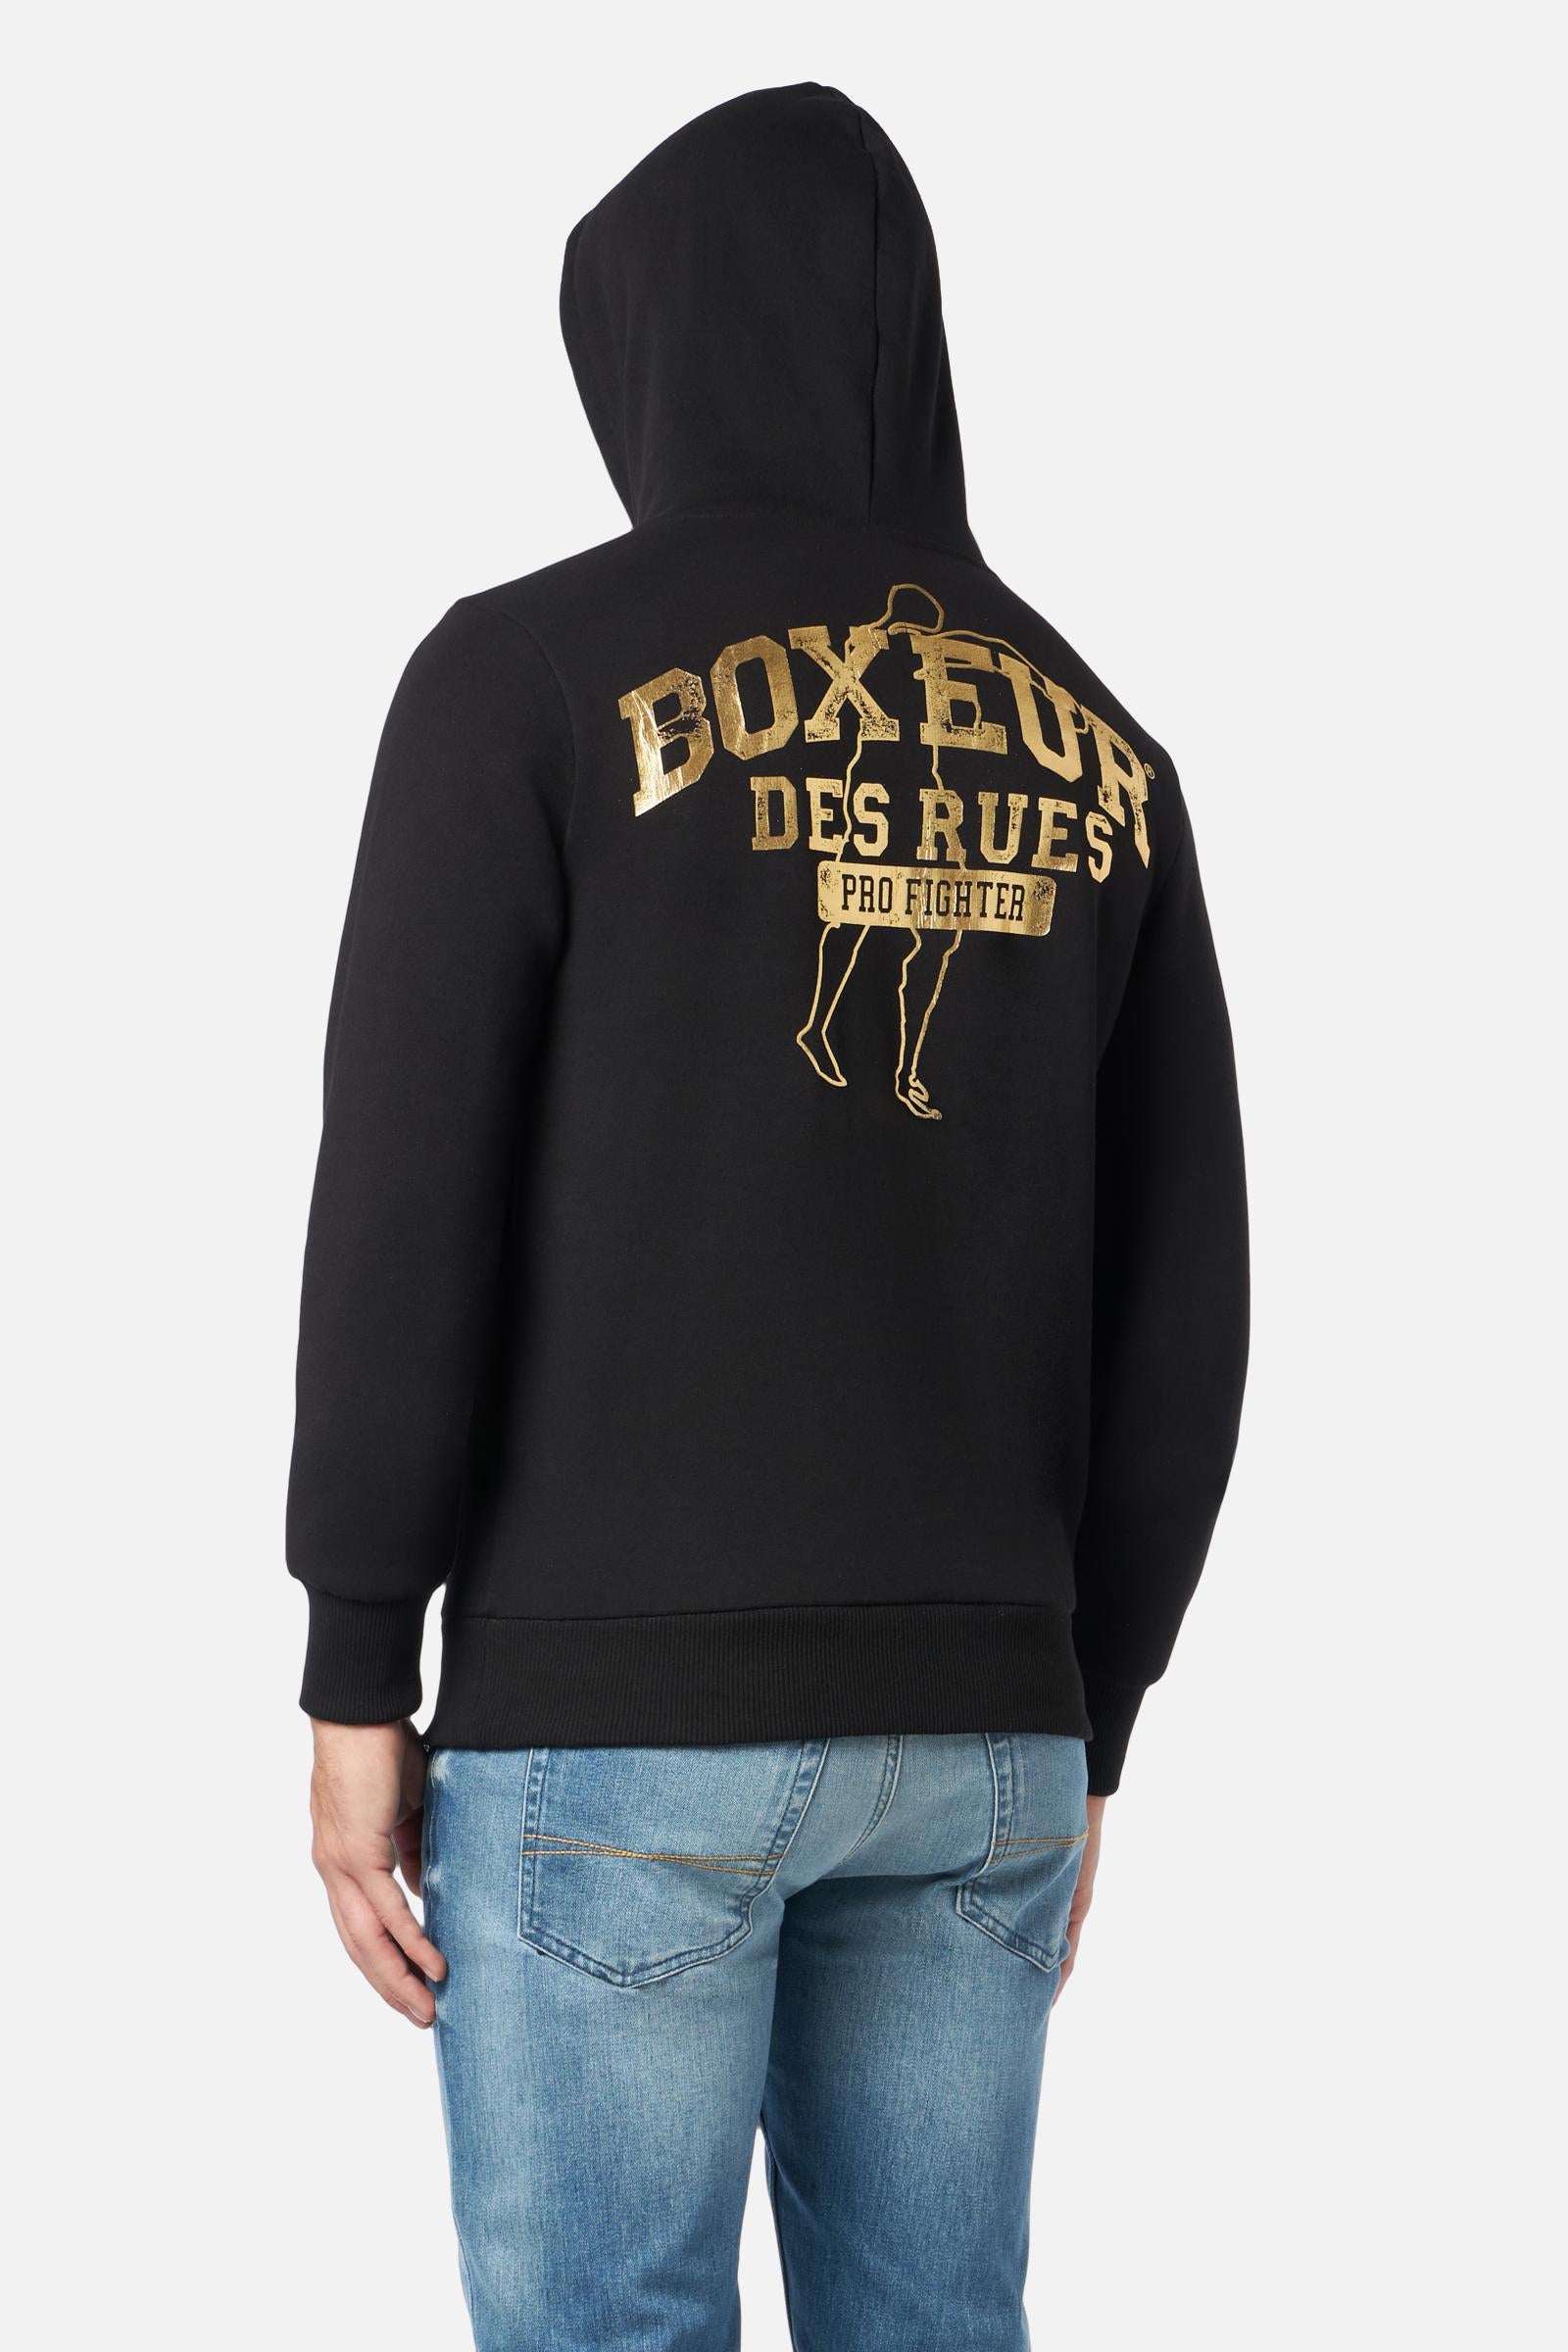 Man Hoodie Sweatshirt in Black-Gold Kapuzenpullover Boxeur des Rues   